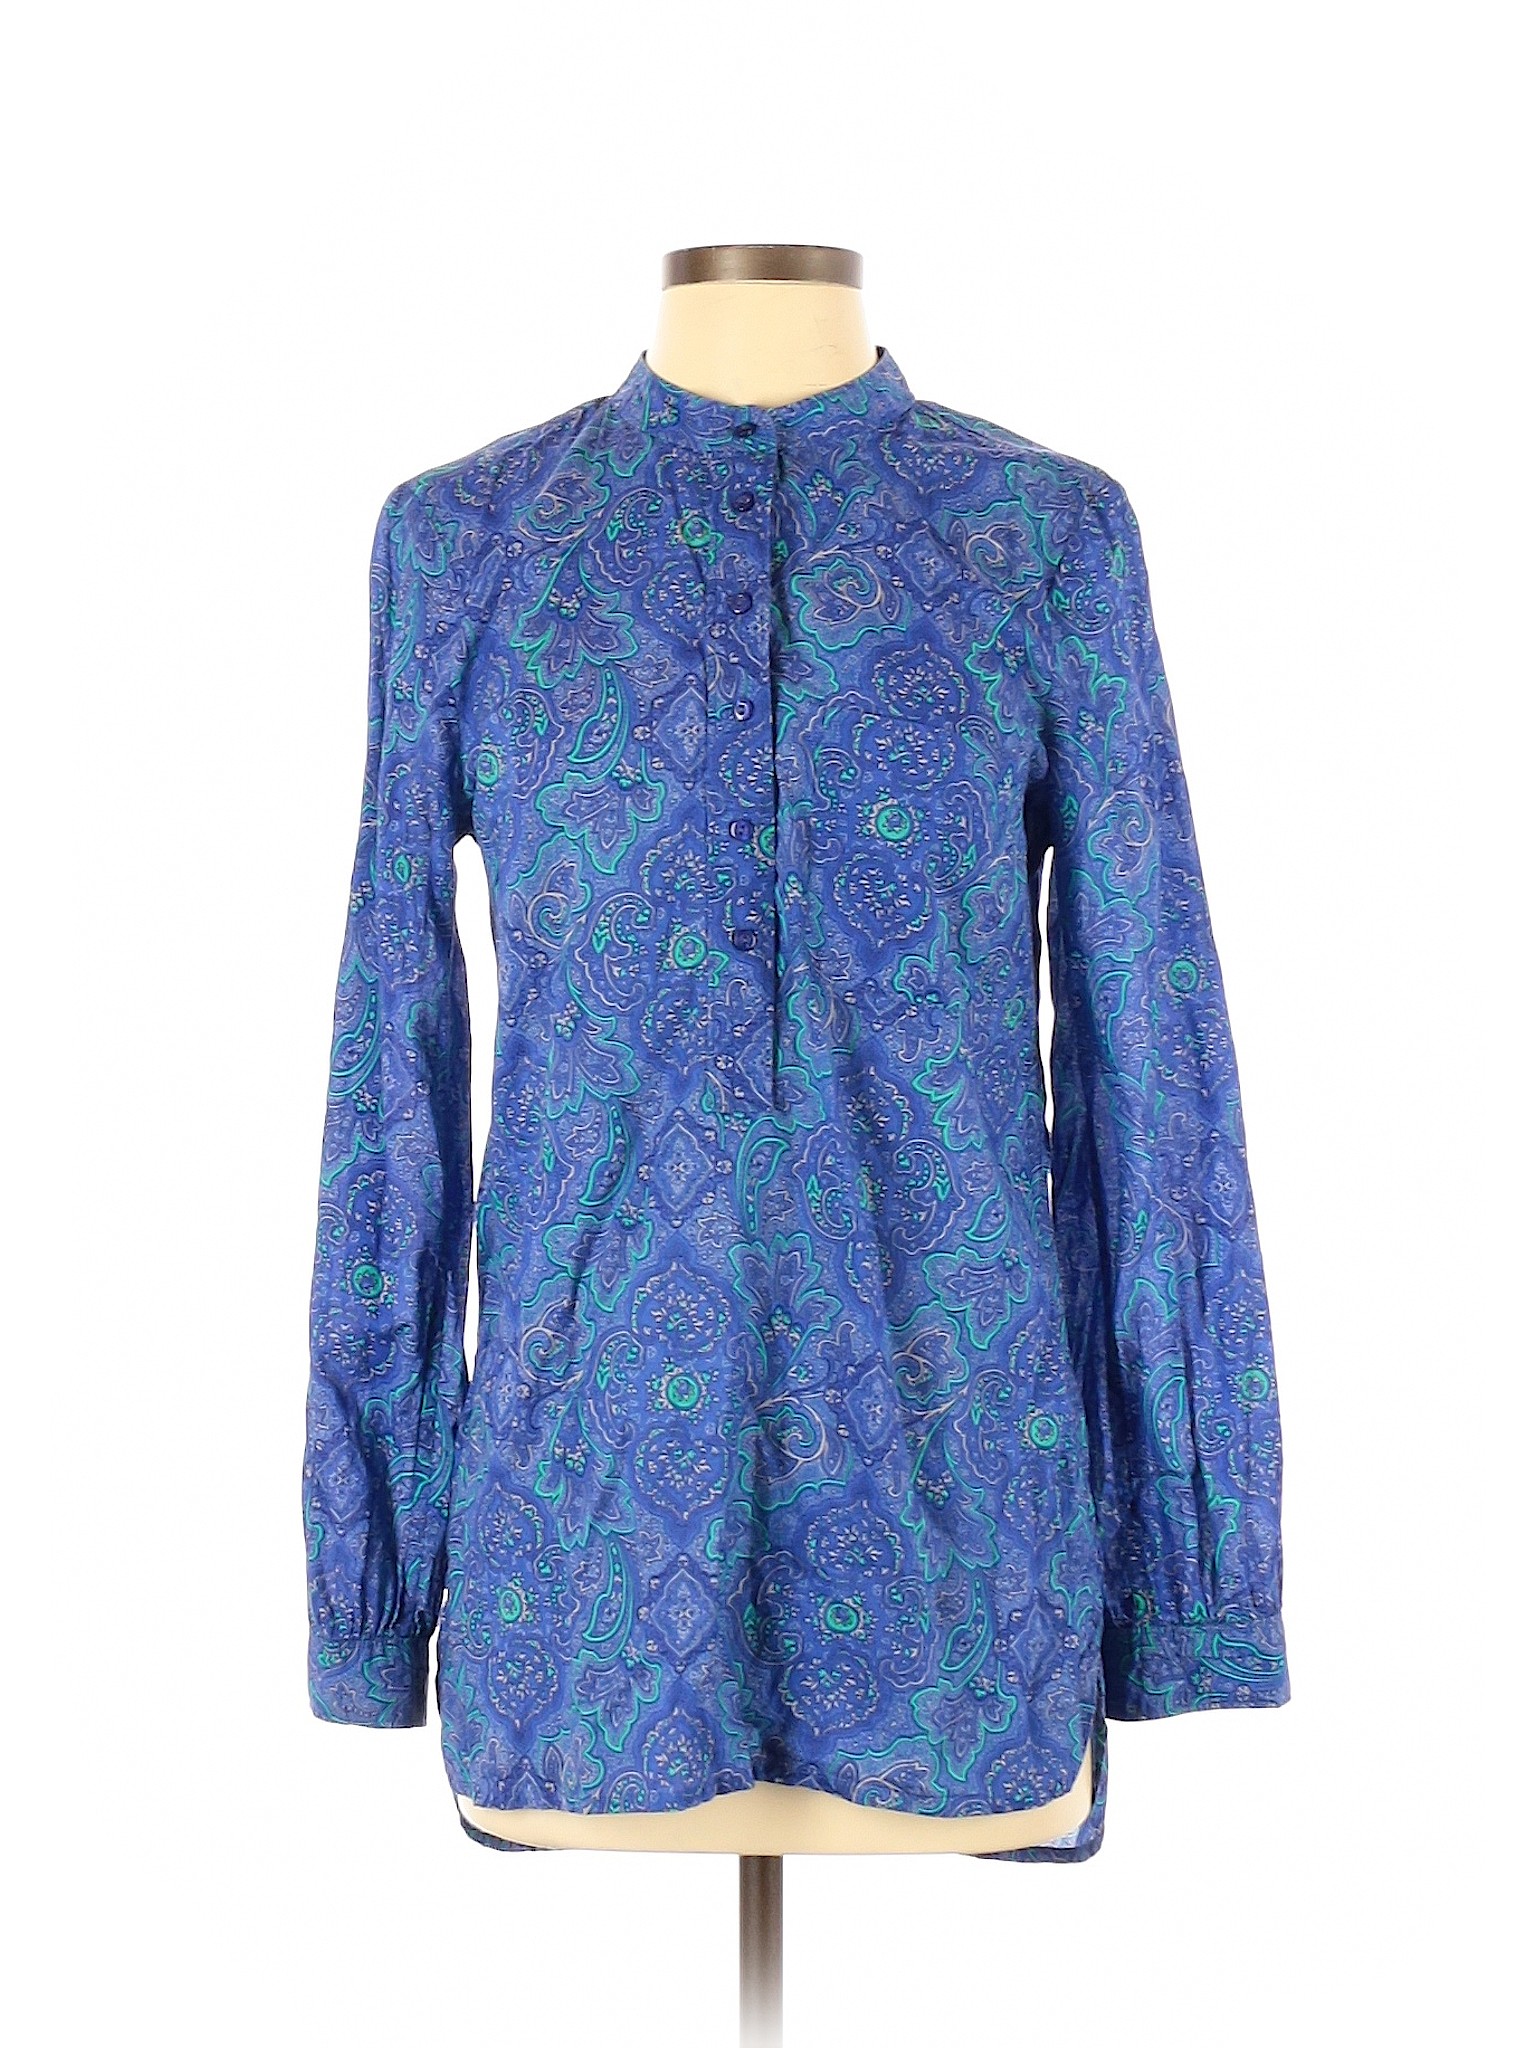 Gap Women Blue Long Sleeve Blouse S | eBay